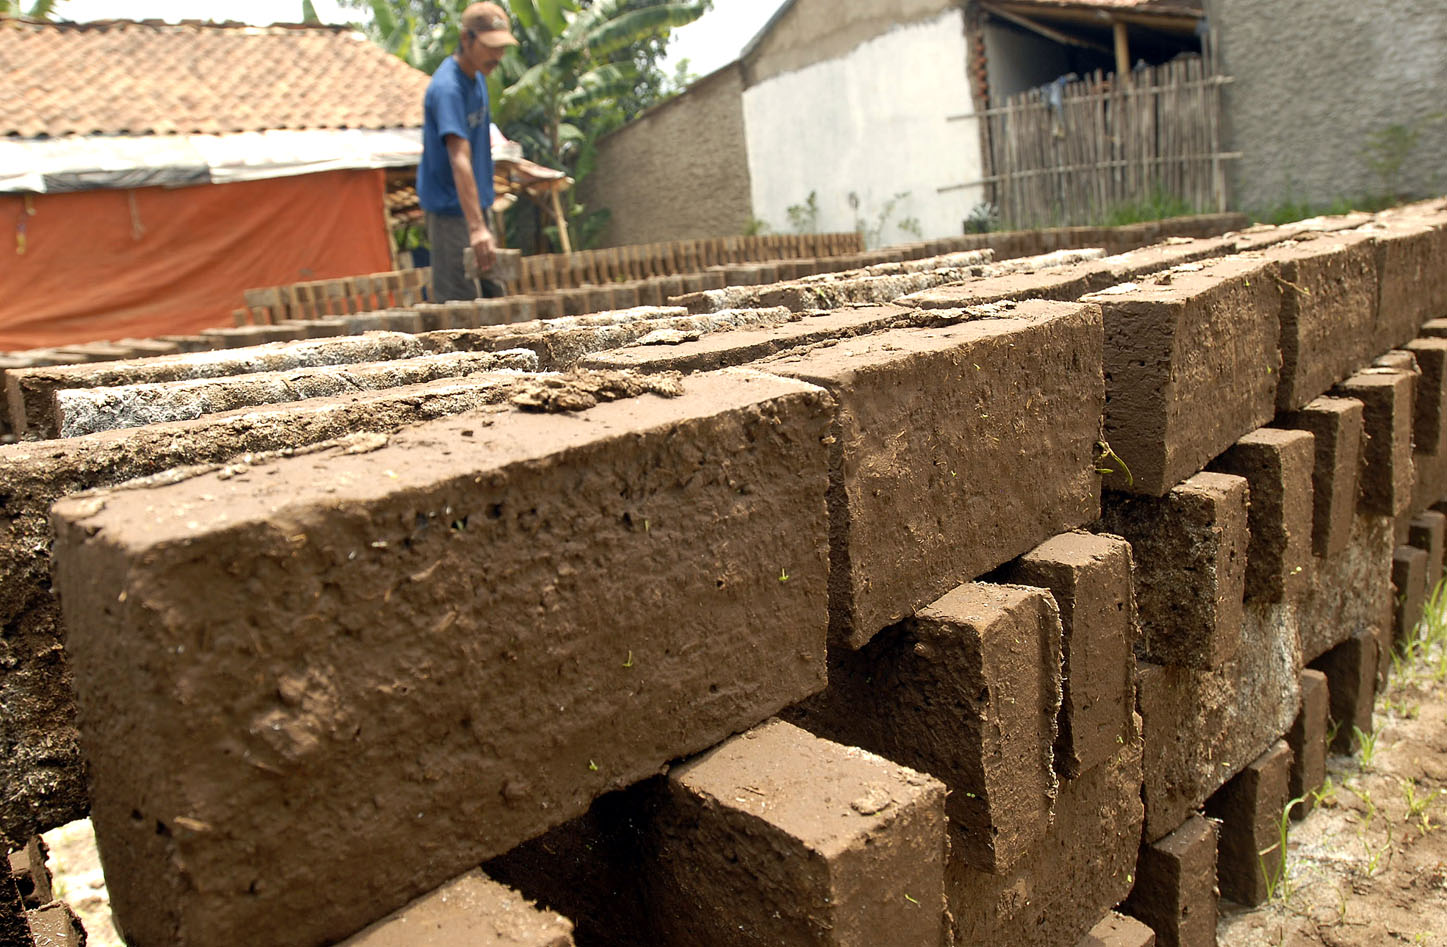  FOTO: Curah hujan tinggi produksi batu bata menurun